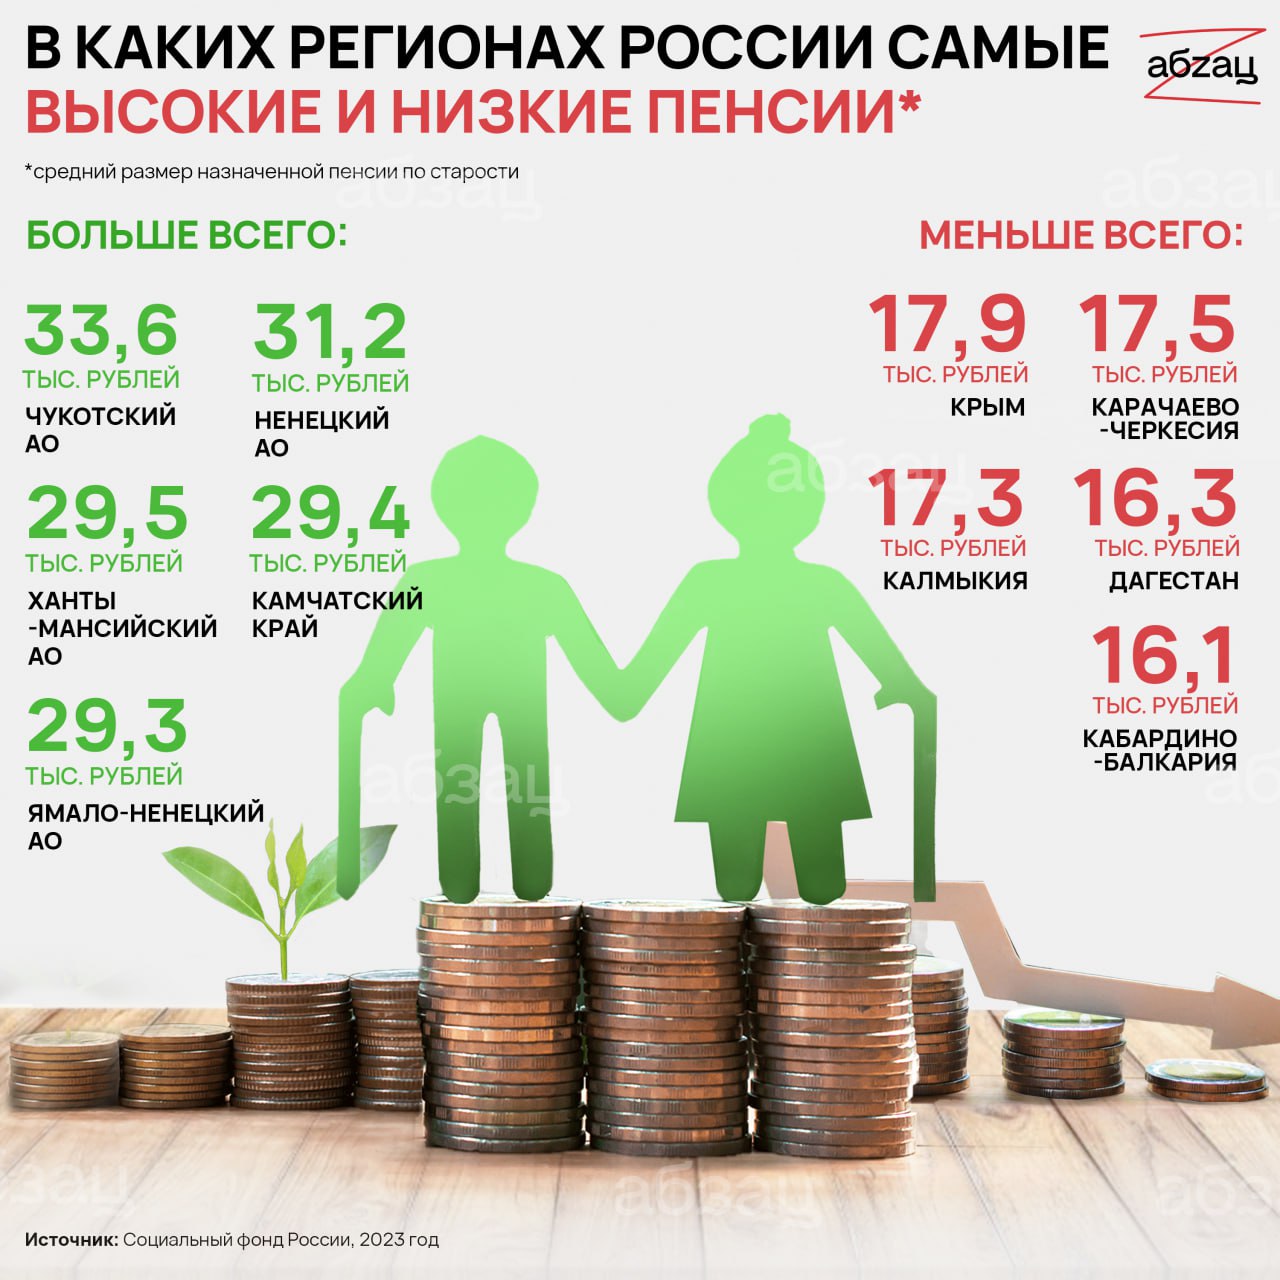 Социальная пенсия по старости 2023 года. Самая высокая пенсия в России. Самые высокие пенсии в России по регионам. Сумма социальной пенсии в 2023 году. Средняя пенсия в России в 2023.